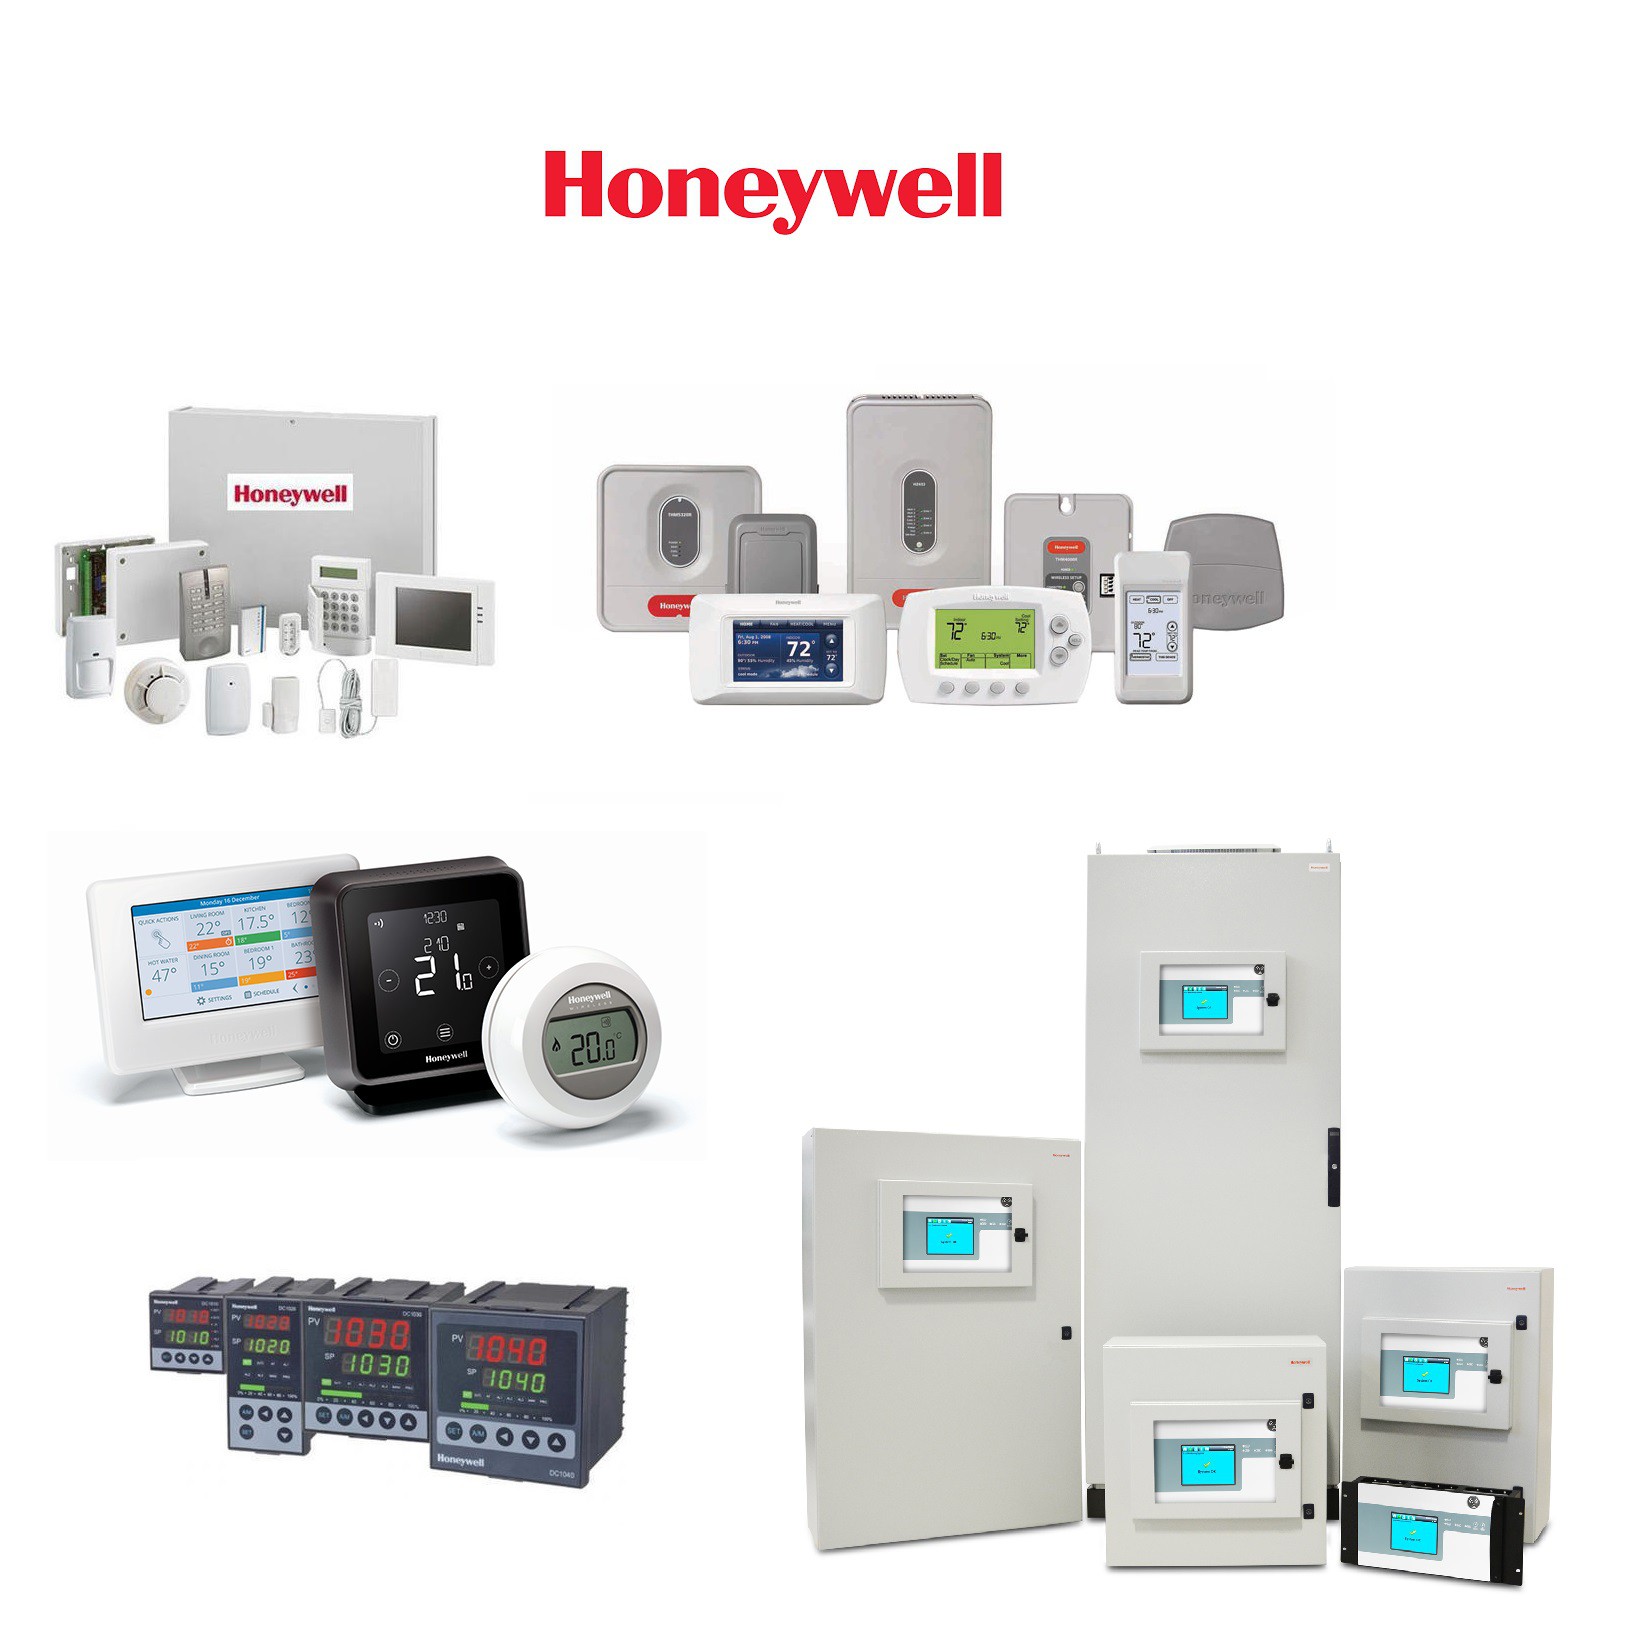 HONEYWELL GLAC06A2B Heavy-duty Industrial Limit Switch